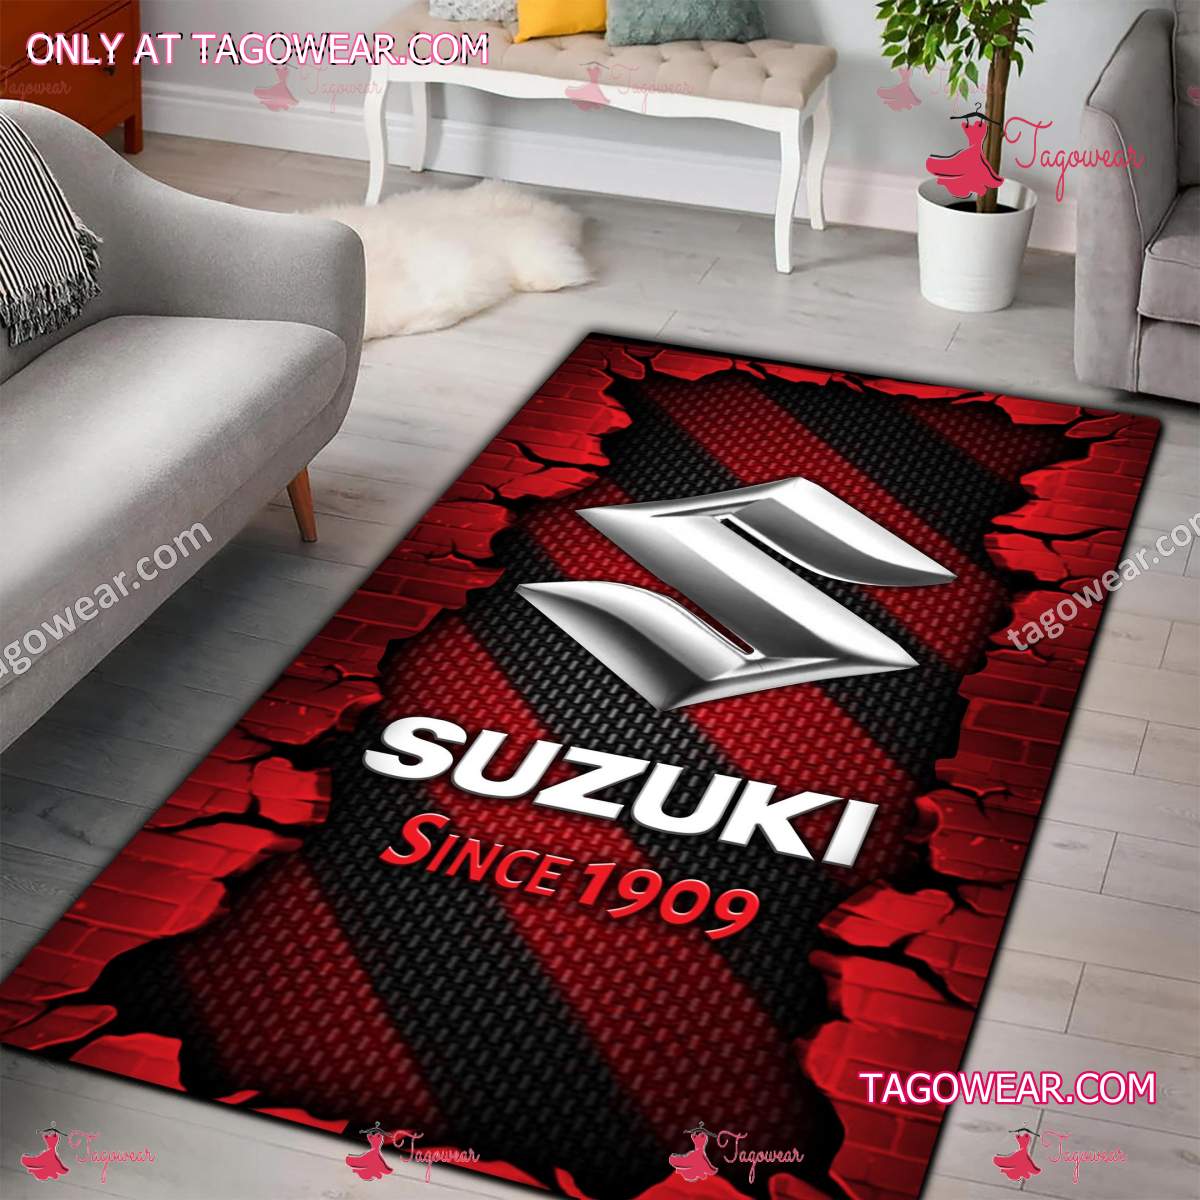 Suzuki Since 1909 Rug Carpet